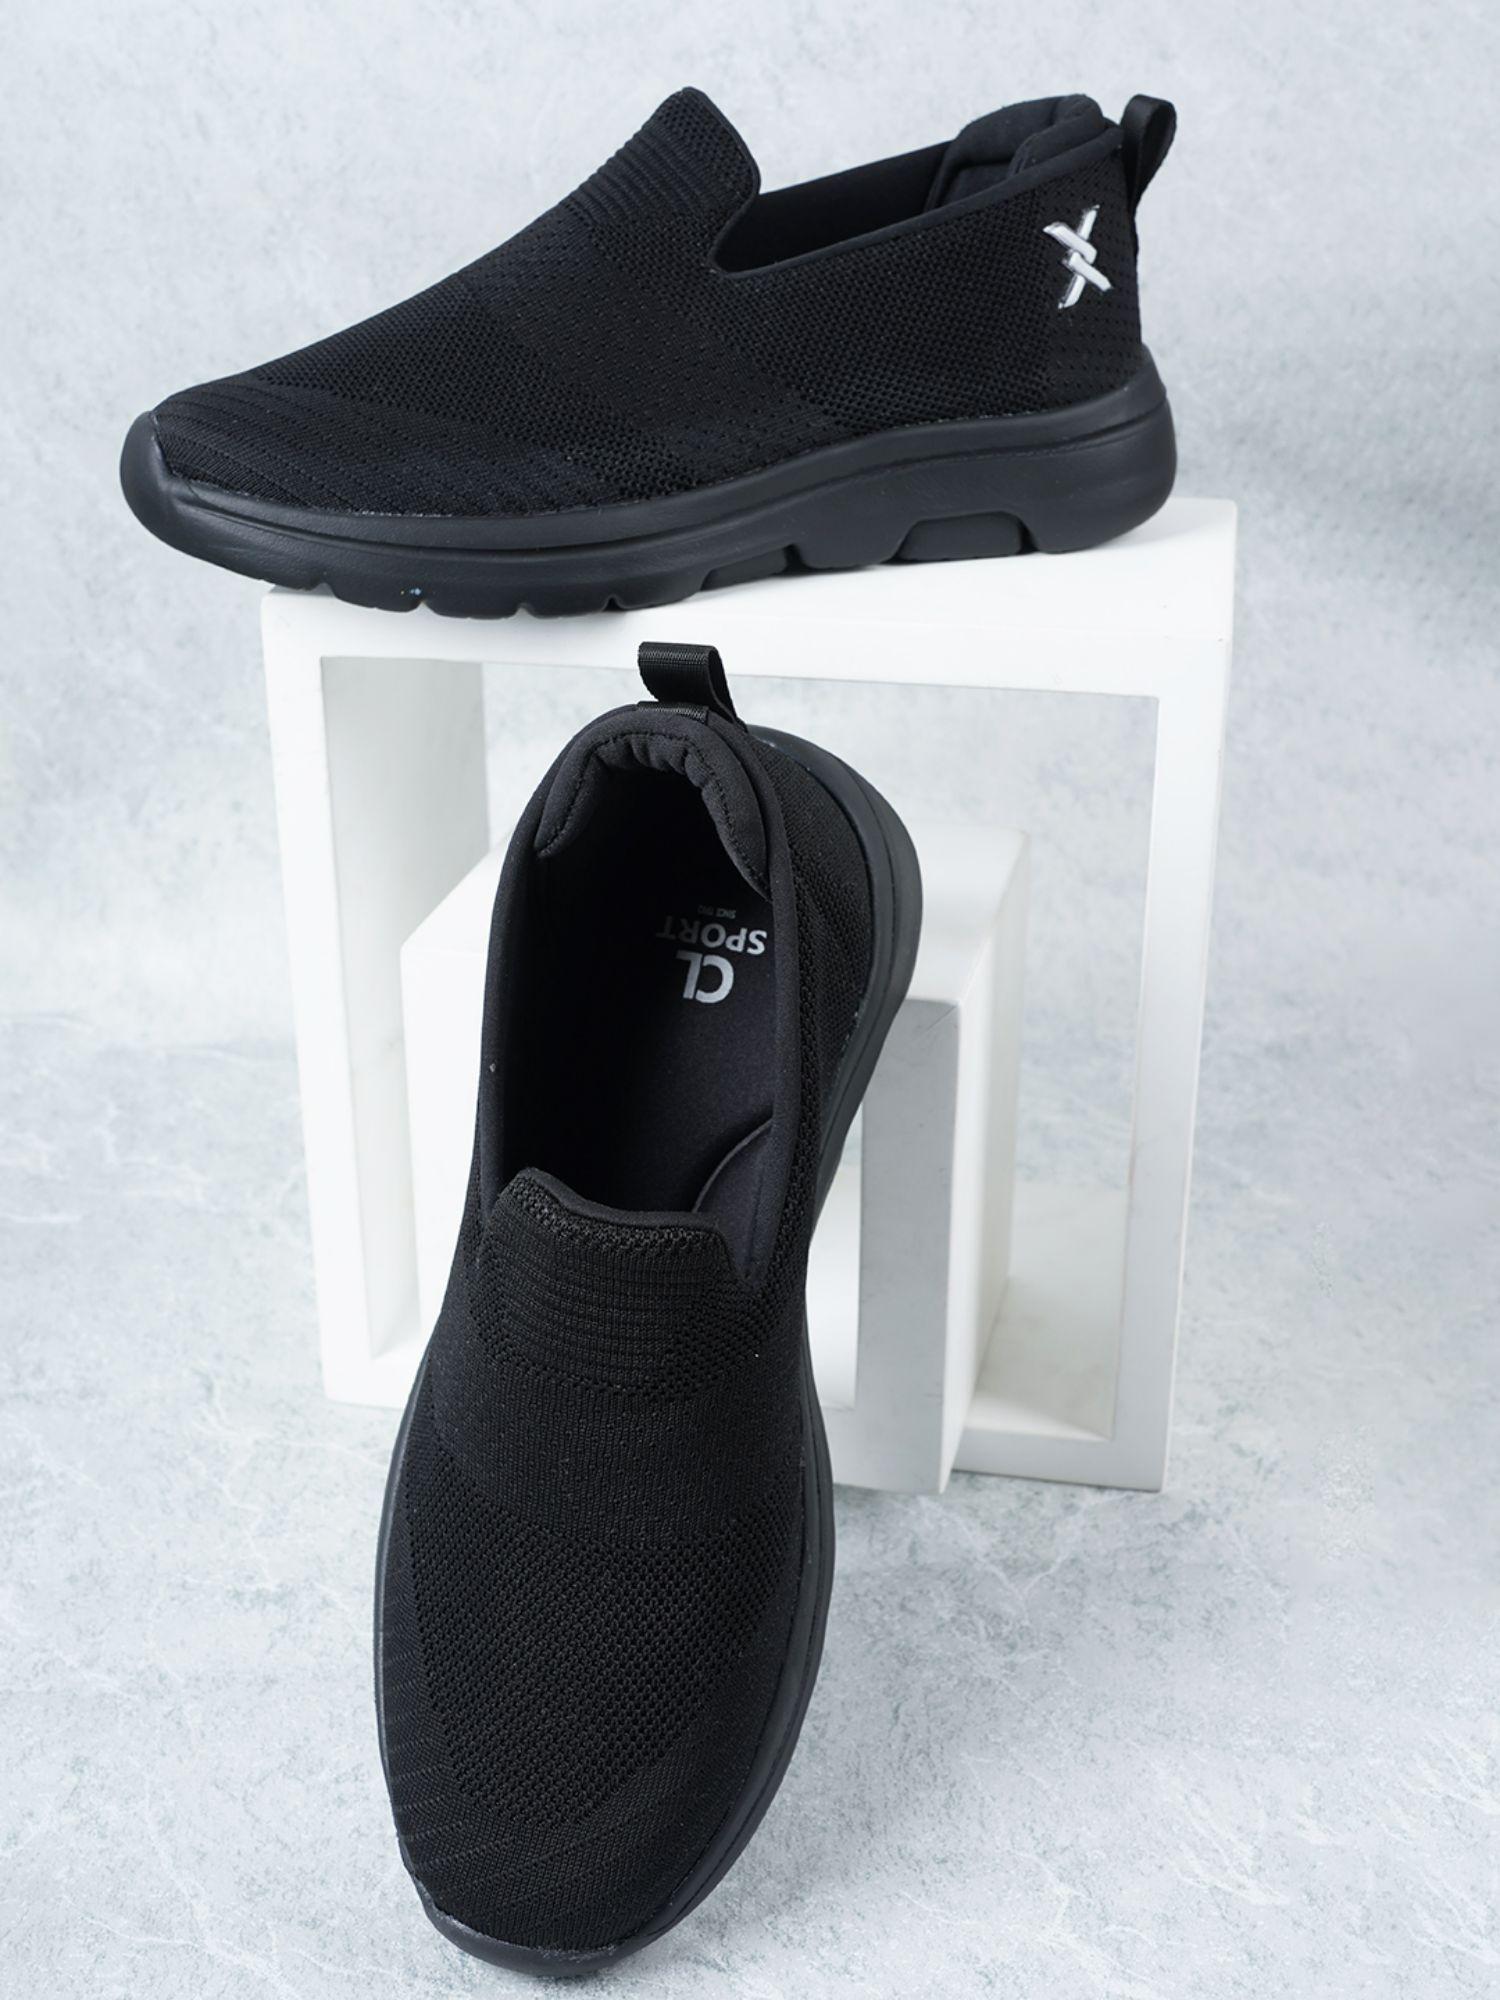 black slip-on woven design sneakers